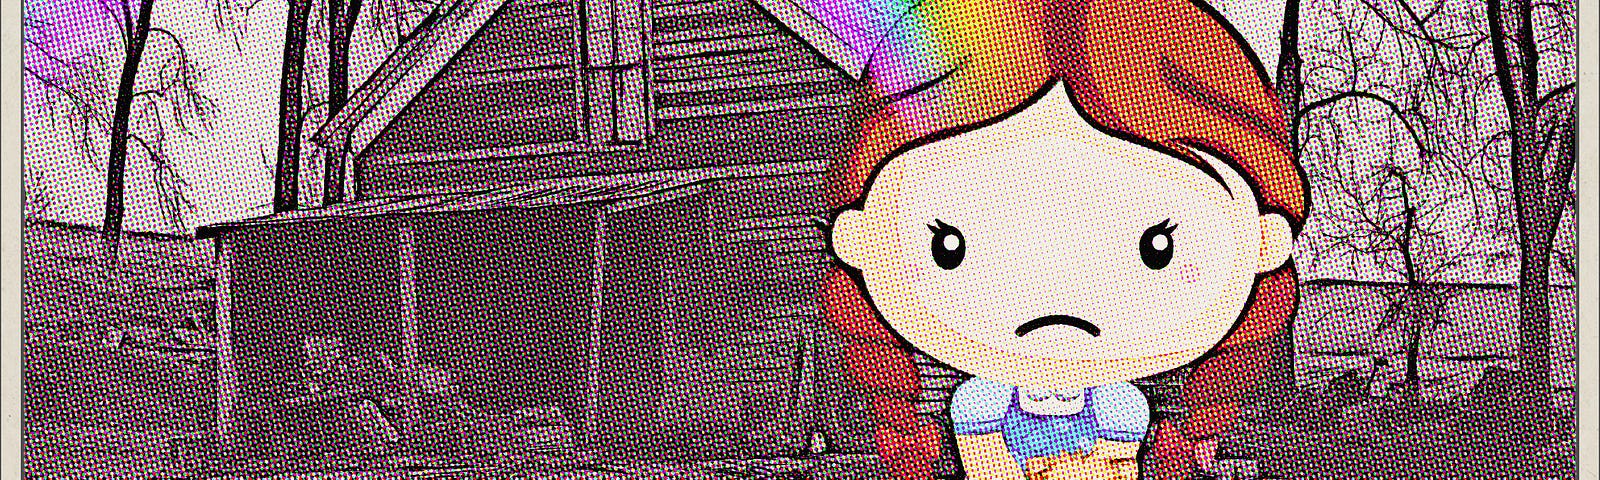 A rainbow shines on Dorothy